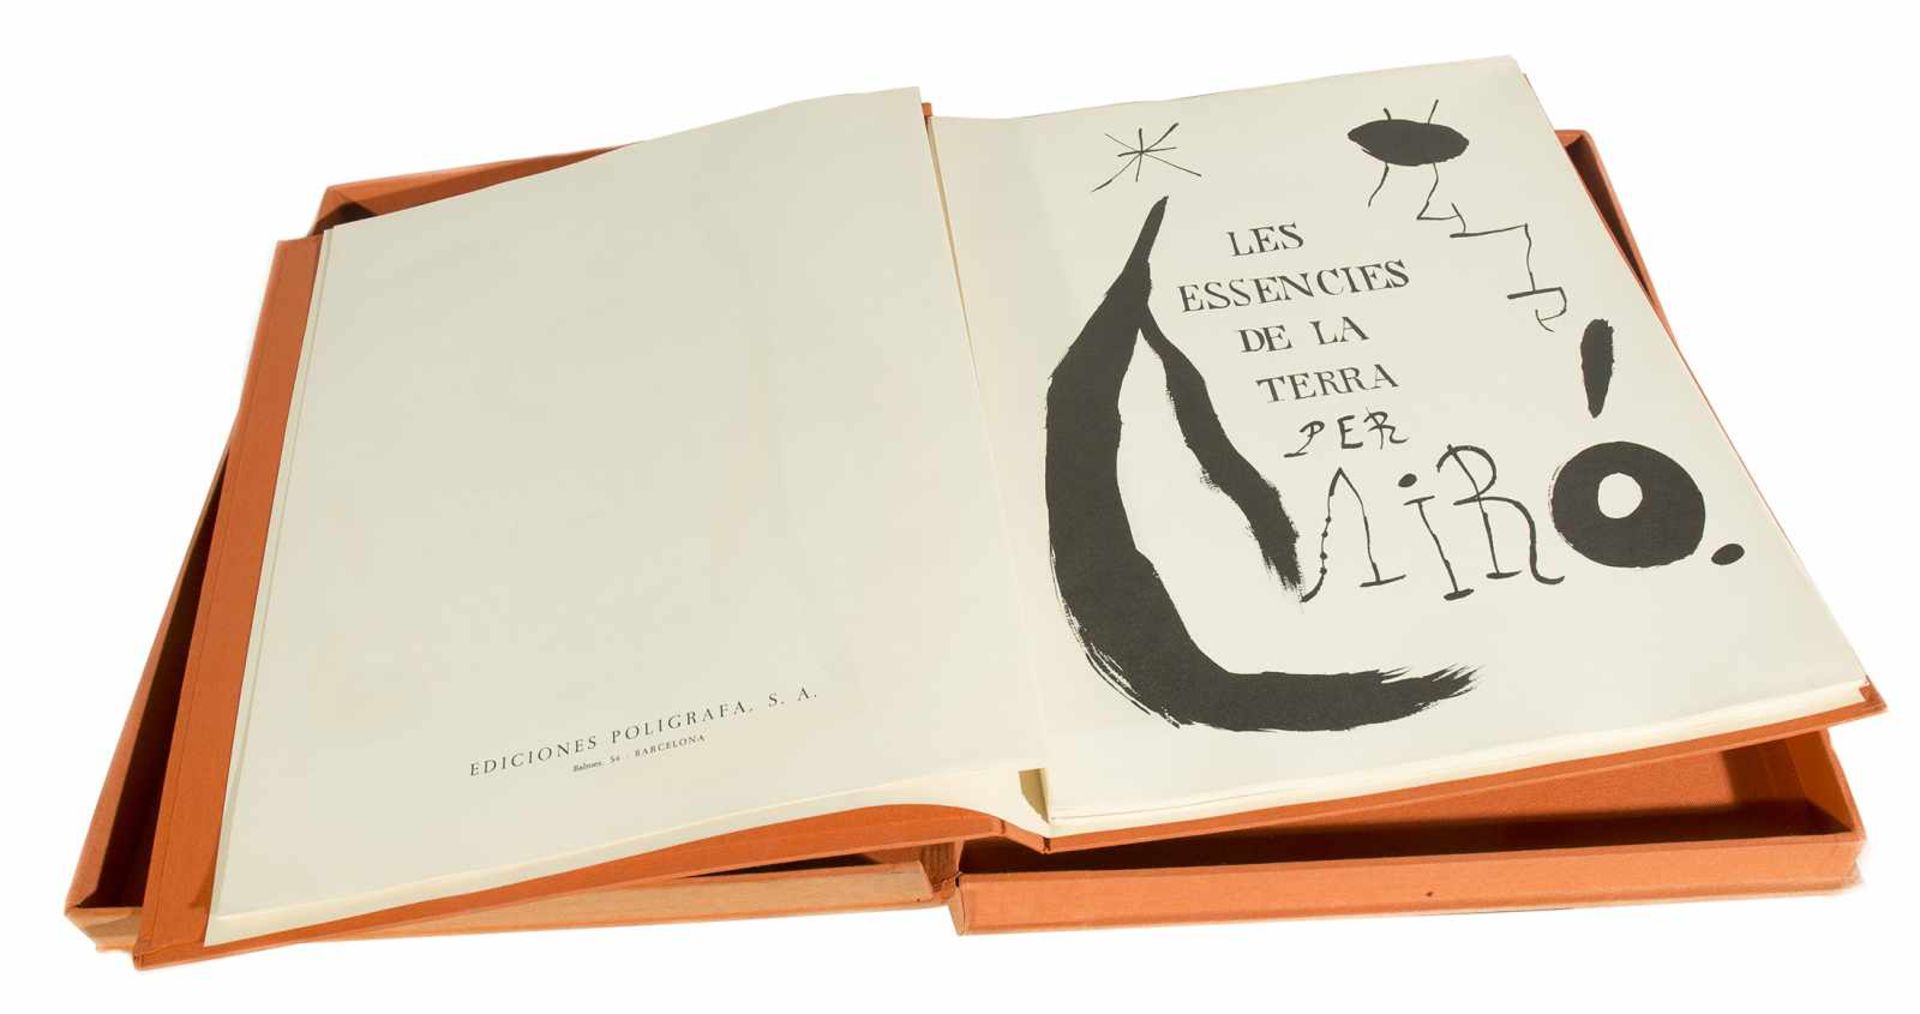 Les Essències de la terra. Joan Miró (Barcelona,1893 - Palma de Mallorca 1983) - Bild 2 aus 4